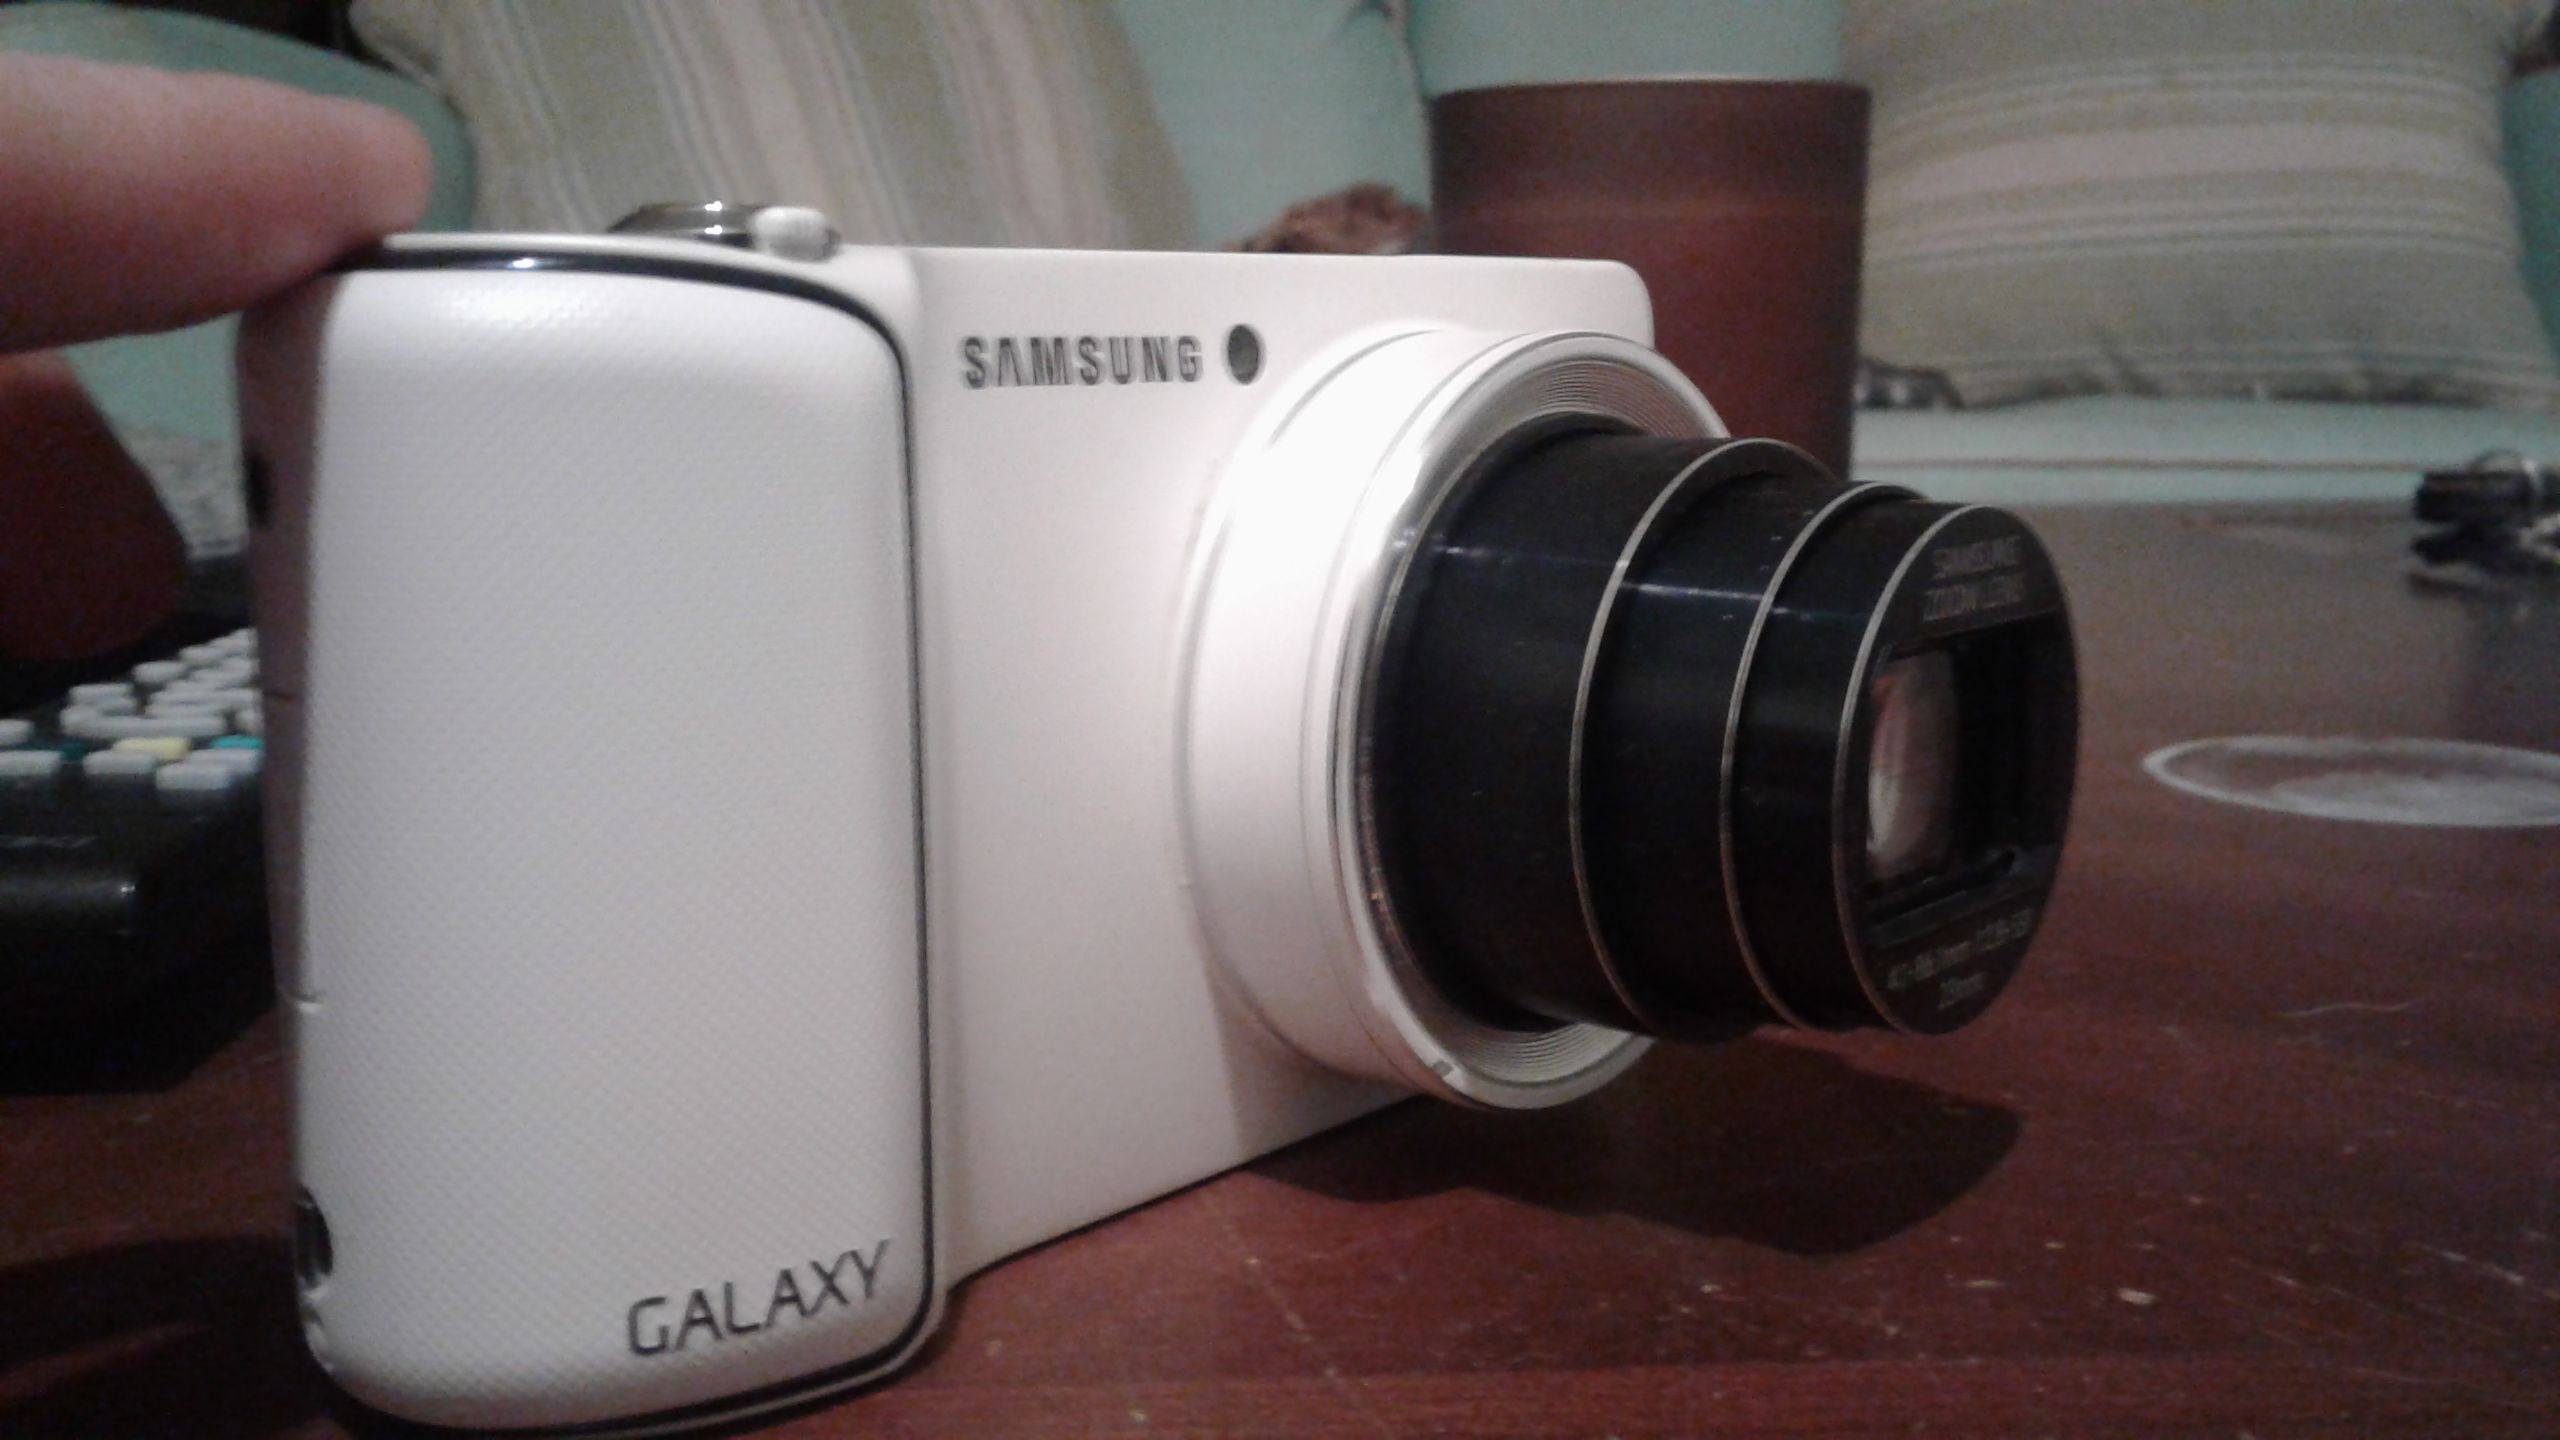 Samsung Galaxy Camera Model: EK-GC110